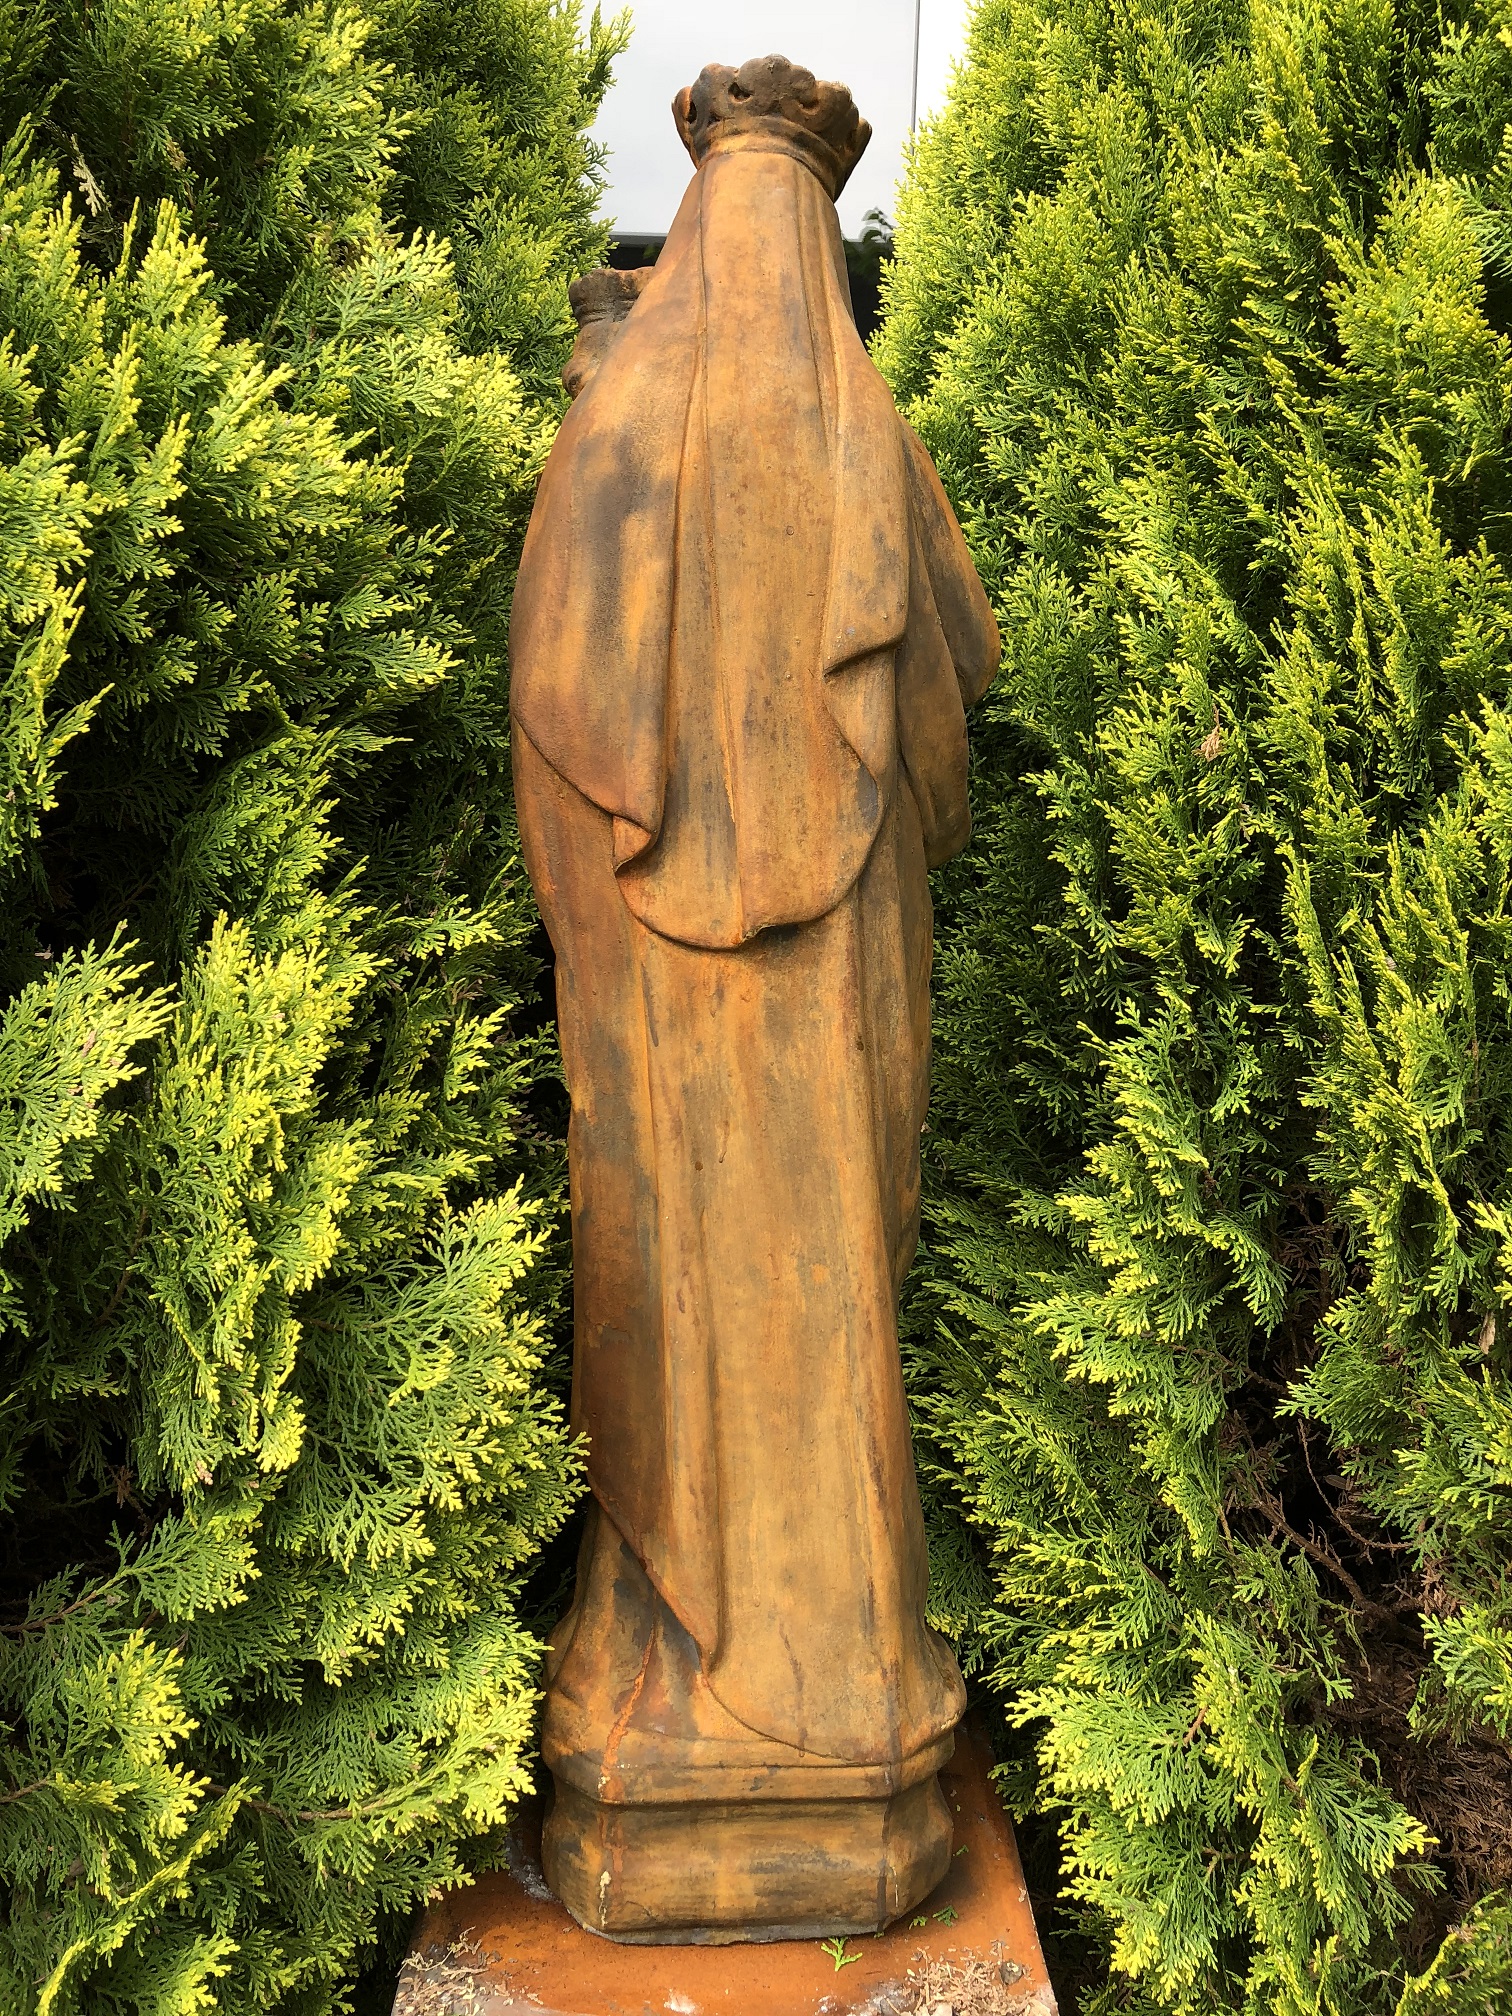 Wunderschöne Statue von Maria - Kind, super schöne Vollsteinstatue auf Oxid-Sockel